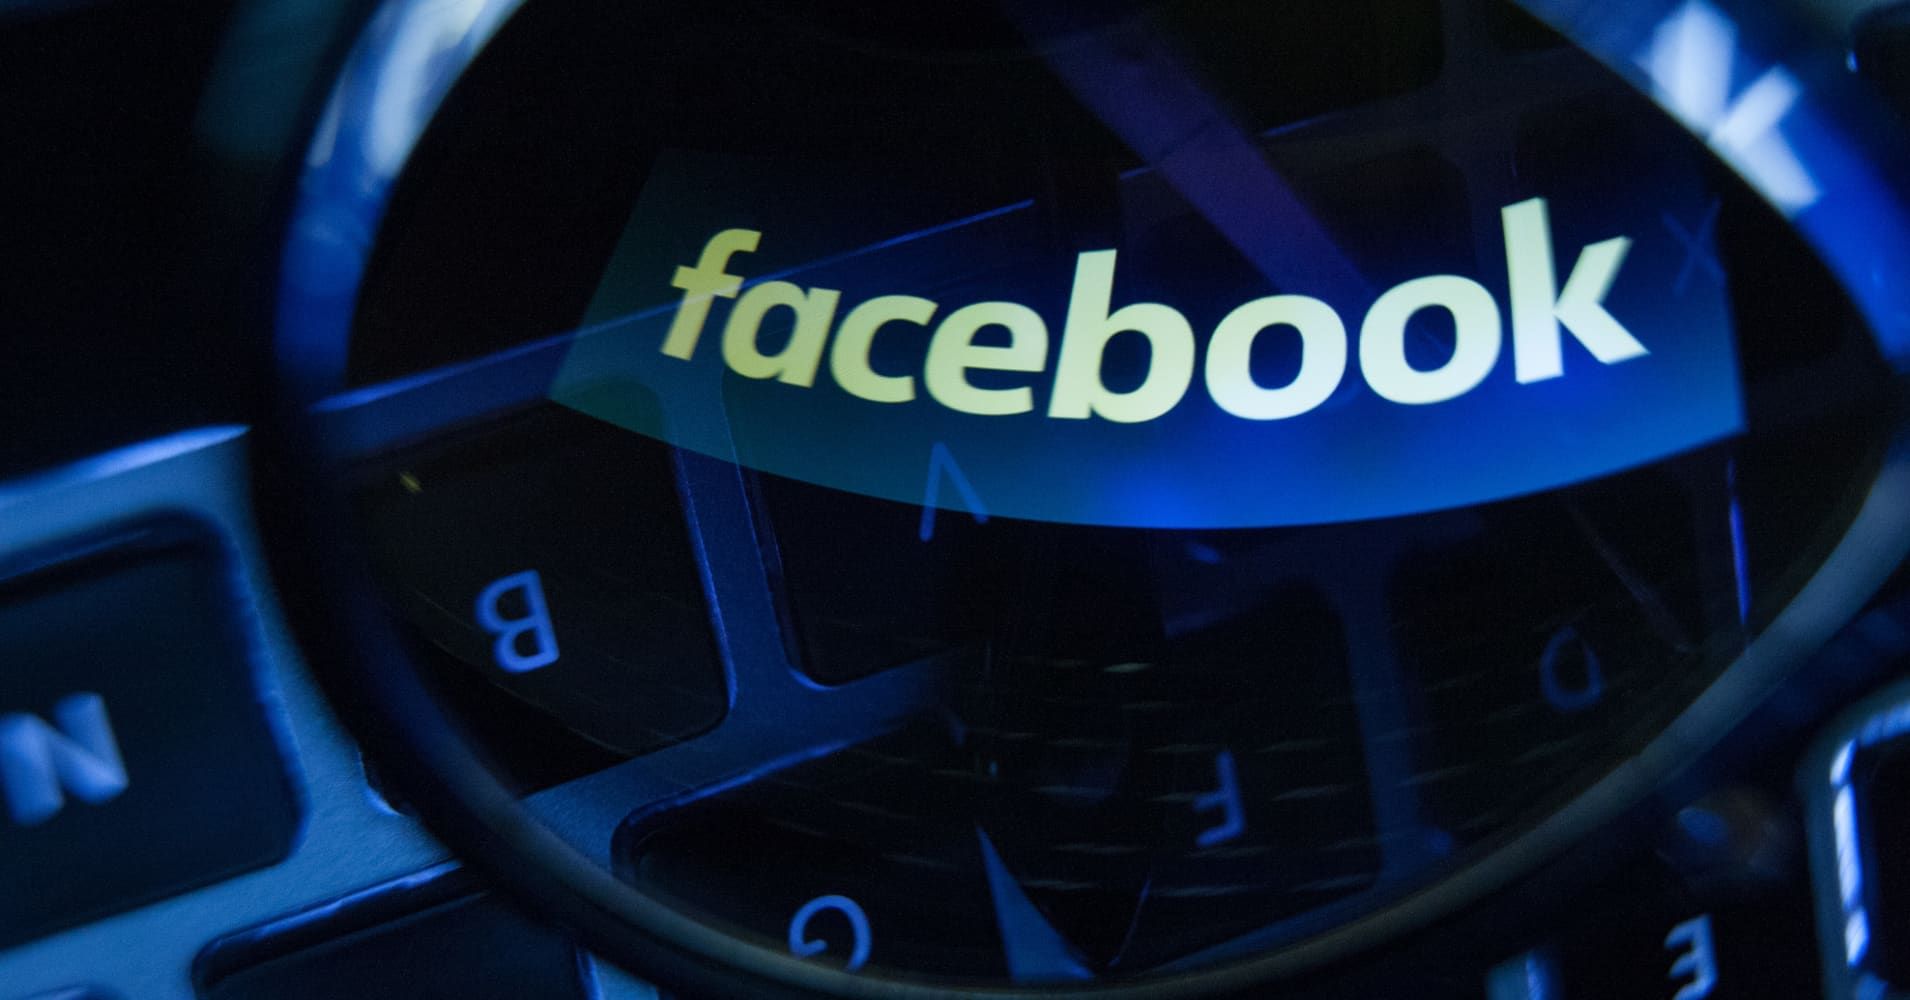 Facebook заблокувала акаунти дослідників, які вивчали прозорість політичної реклами на платформі